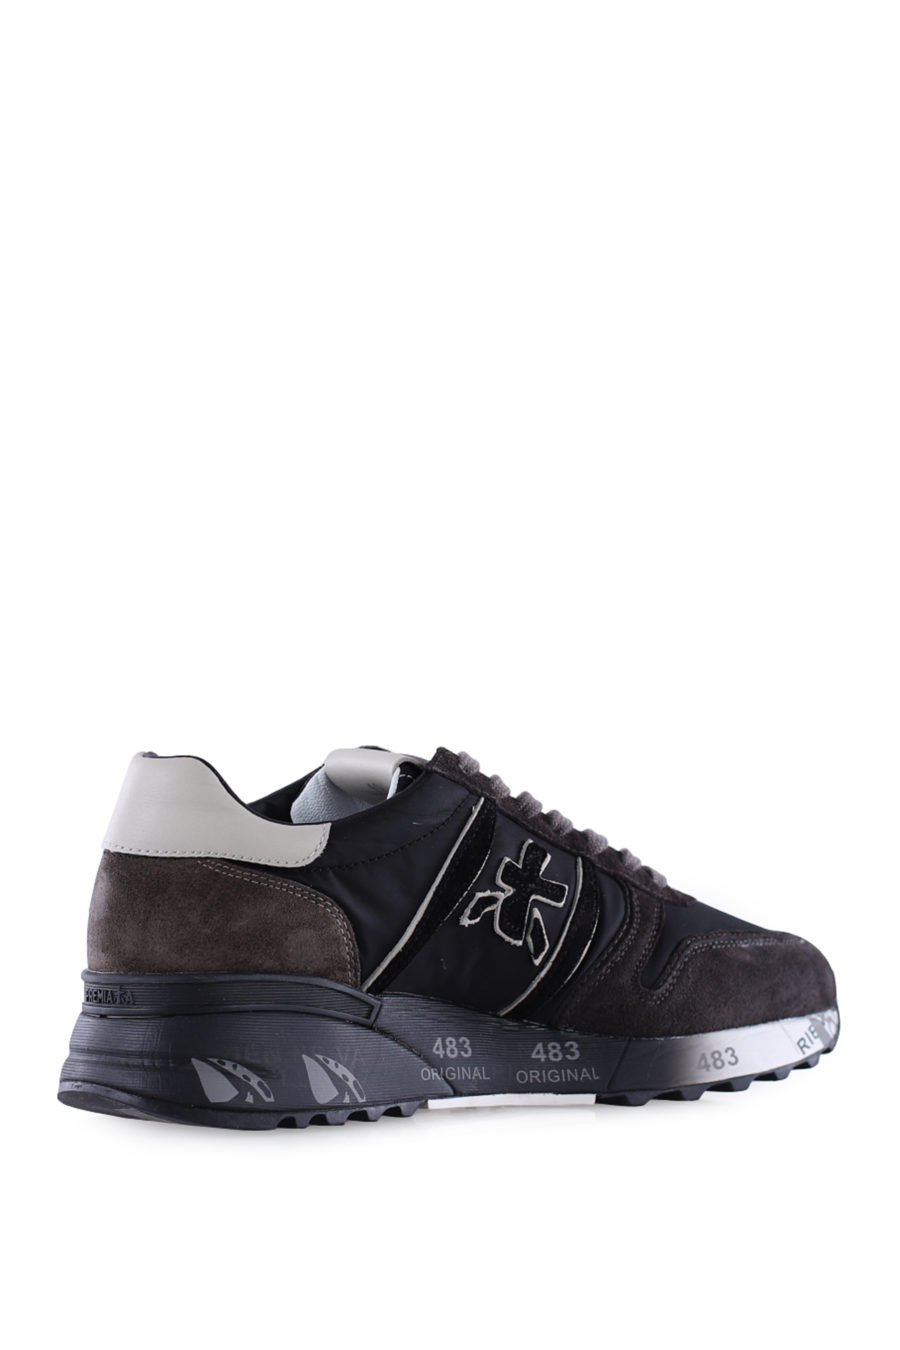 Zapatillas "Lander" color marrón y negro - IMG 9963